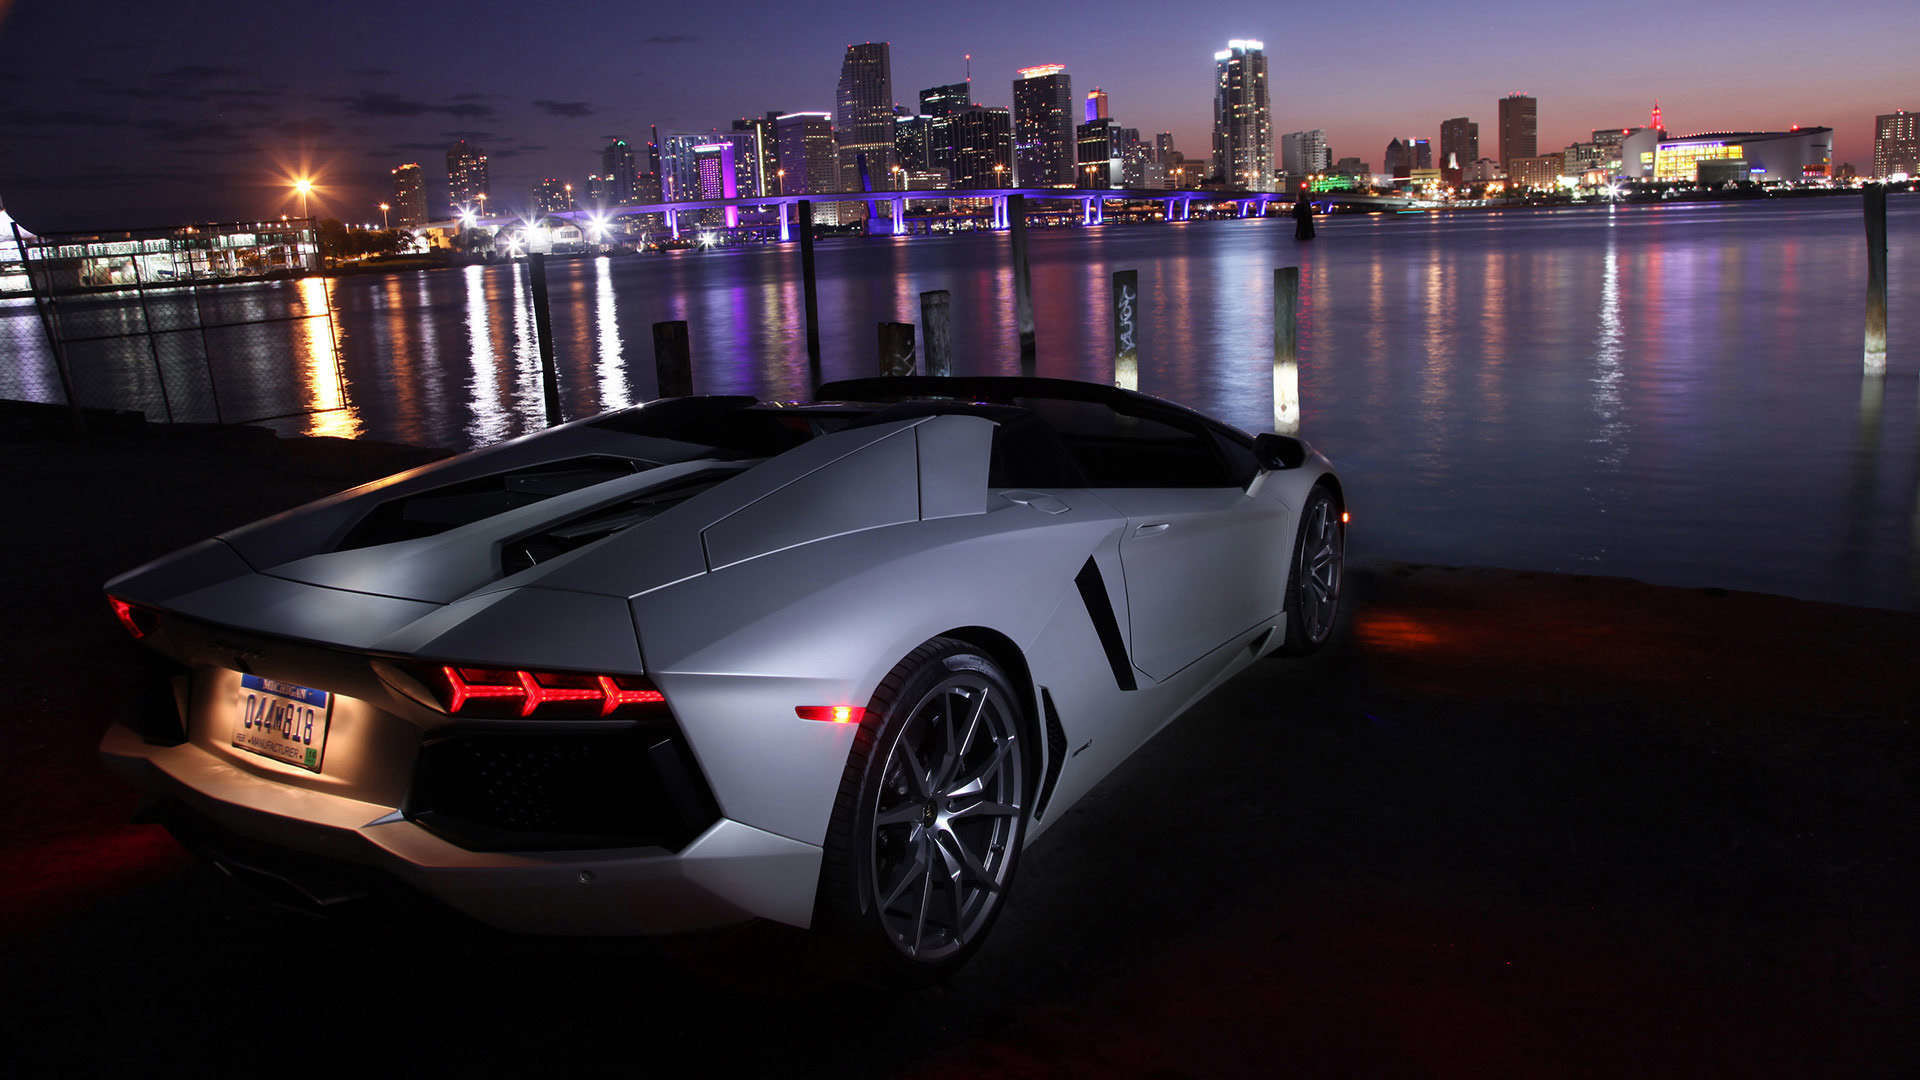 Lamborghini Wallpaper 1080p Wallpapersafari - Cars Wallpaper For Laptop - HD Wallpaper 